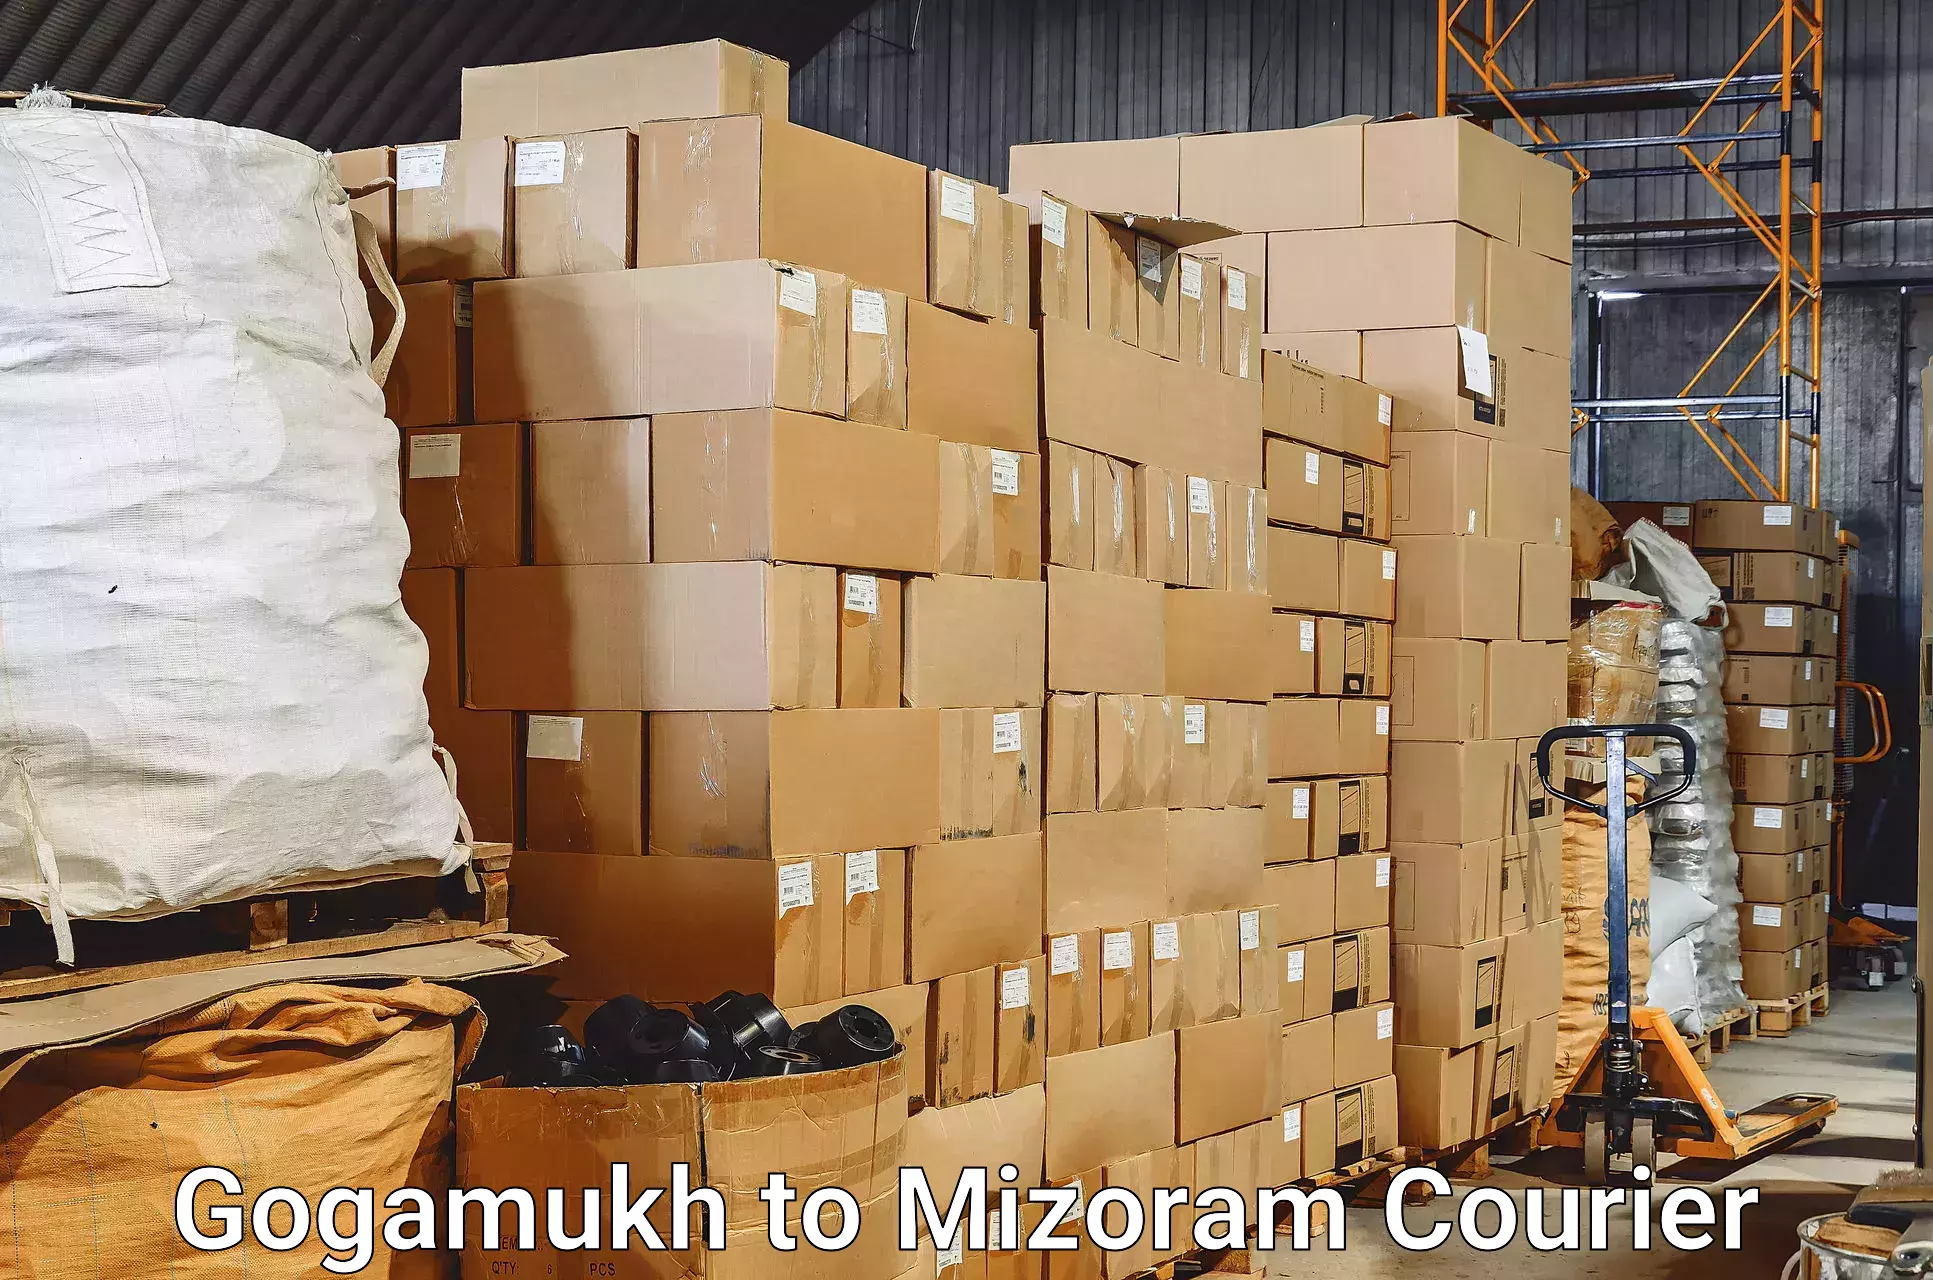 Luggage shipping estimate Gogamukh to Darlawn